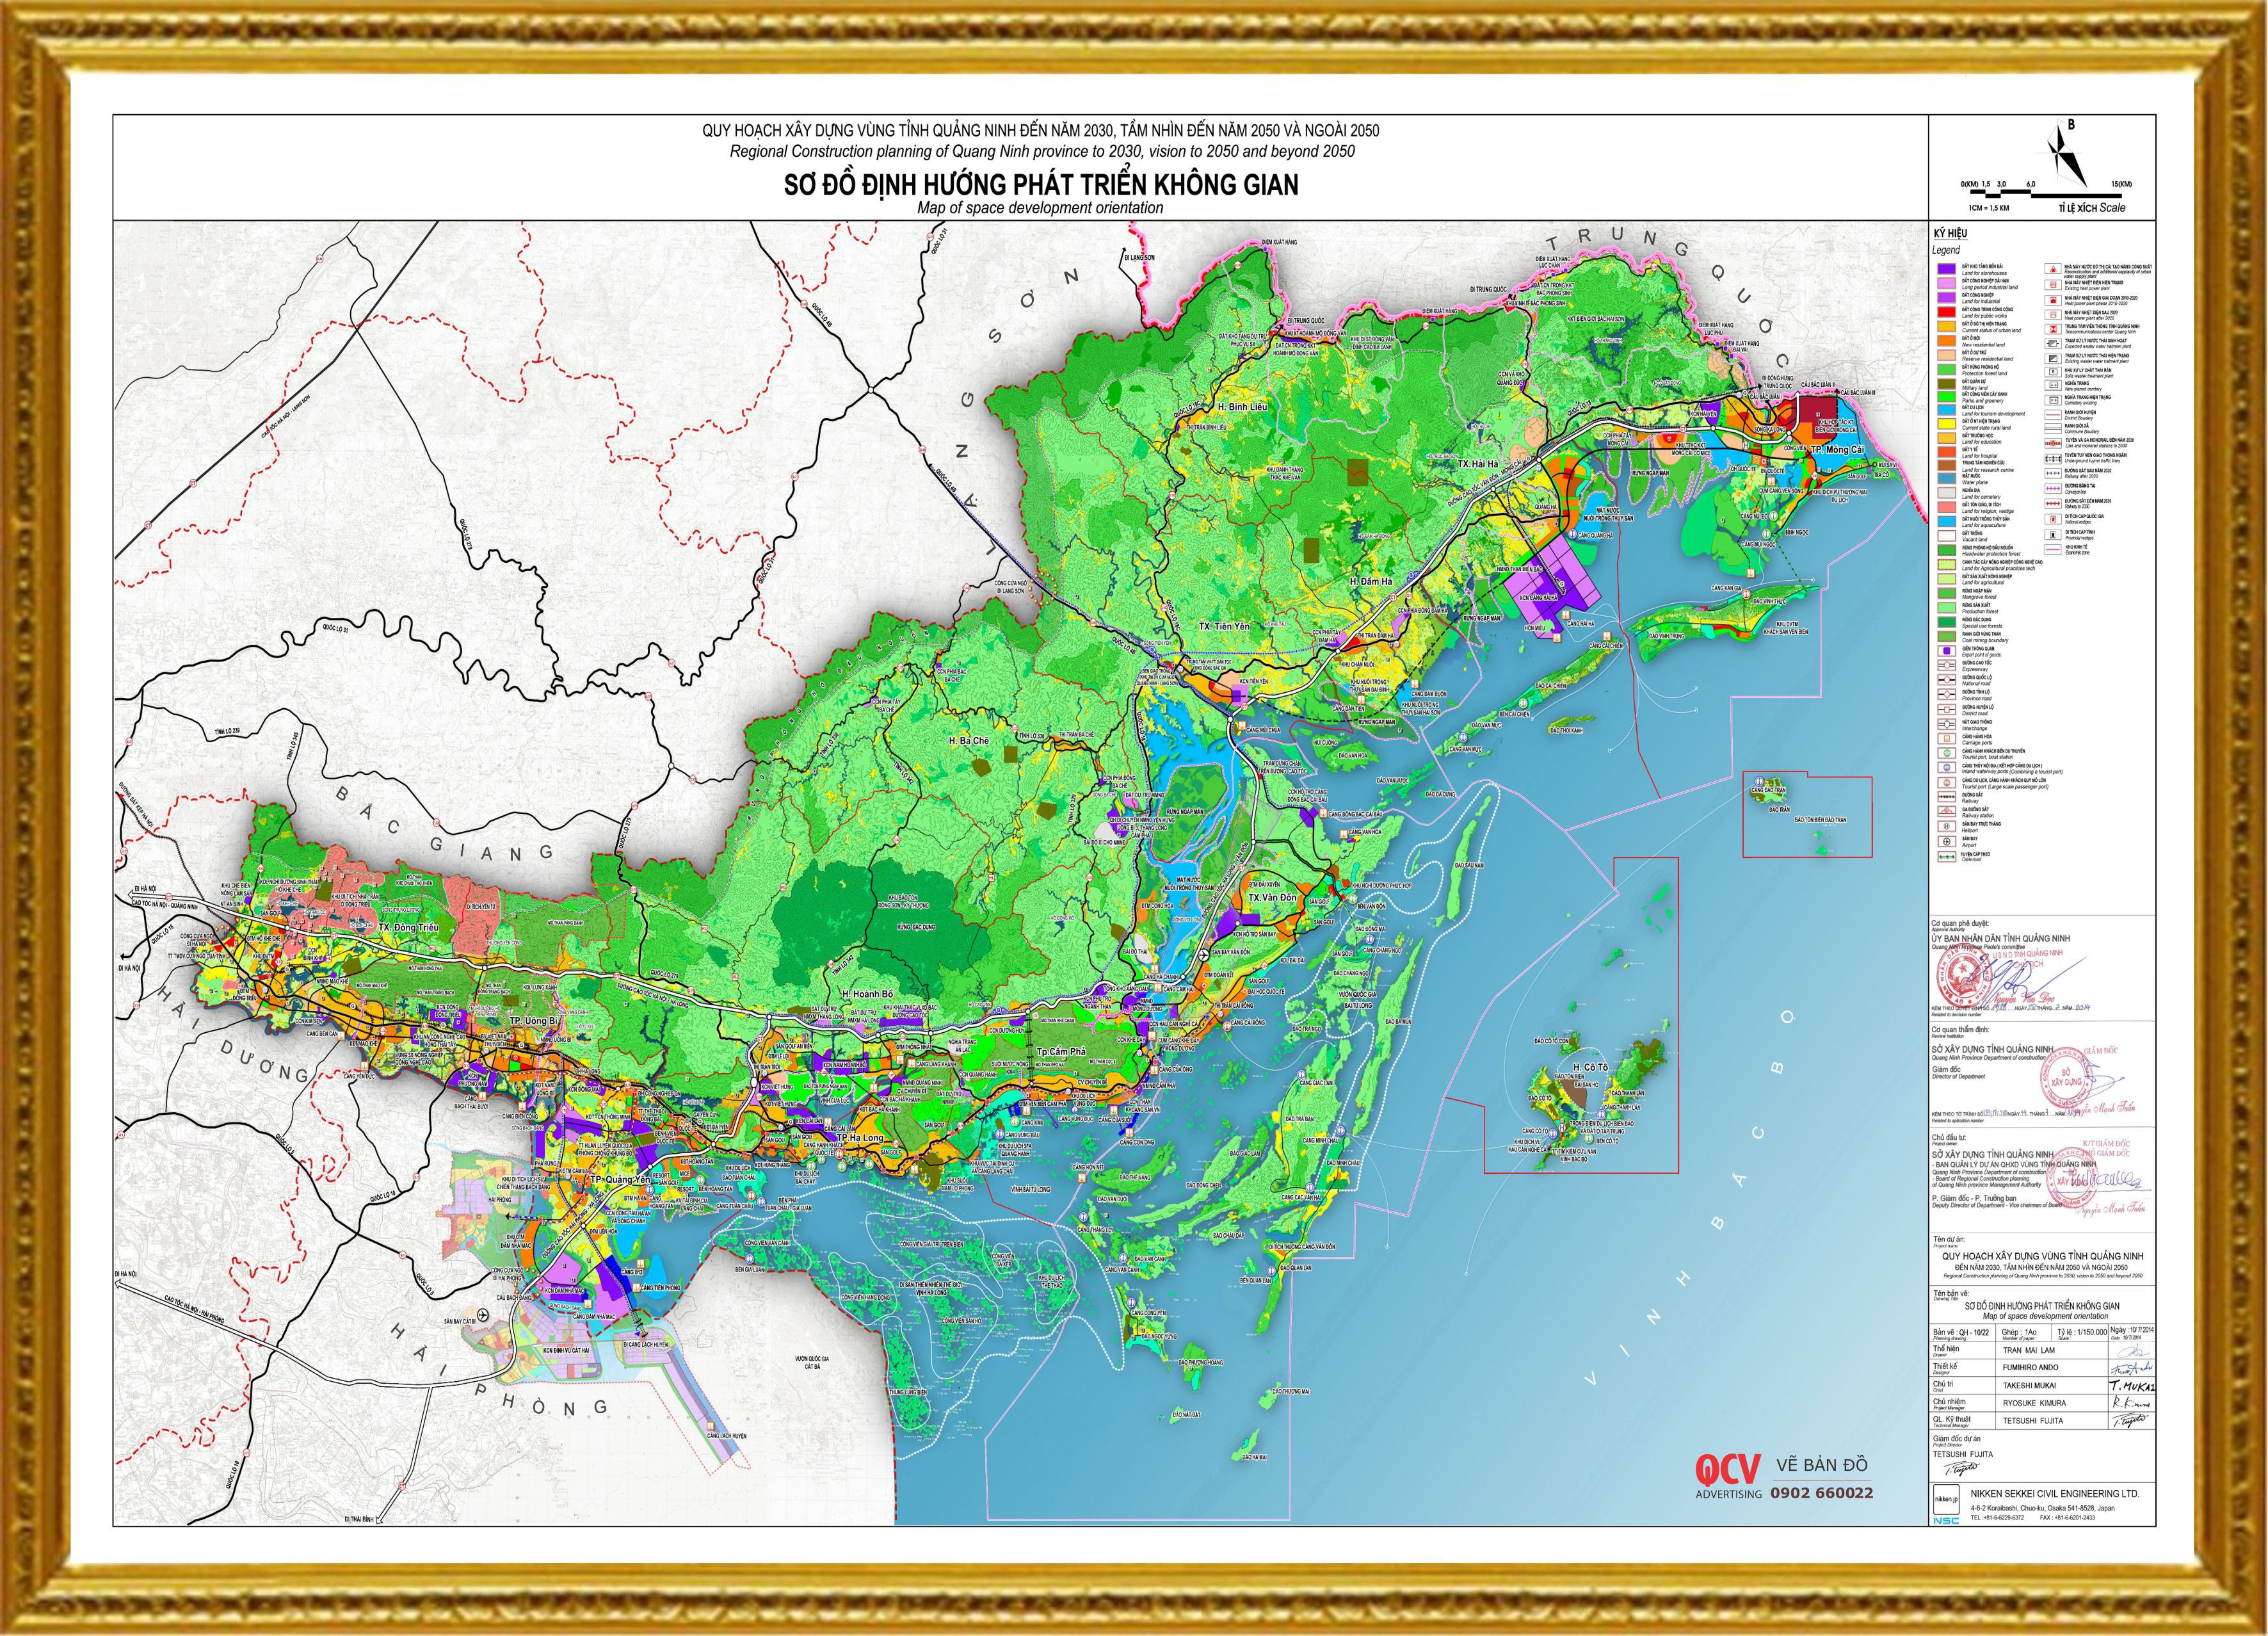 Hãy khám phá bản đồ hành chính tỉnh Quảng Ninh năm 2024 để thấy rõ sự phát triển của địa phương với những kế hoạch đầy tiềm năng và đầu tư trong cơ sở hạ tầng. Xem ngay để tìm hiểu về Quảng Ninh đang biến đổi và trở thành một điểm đến hàng đầu cho du lịch và đầu tư.